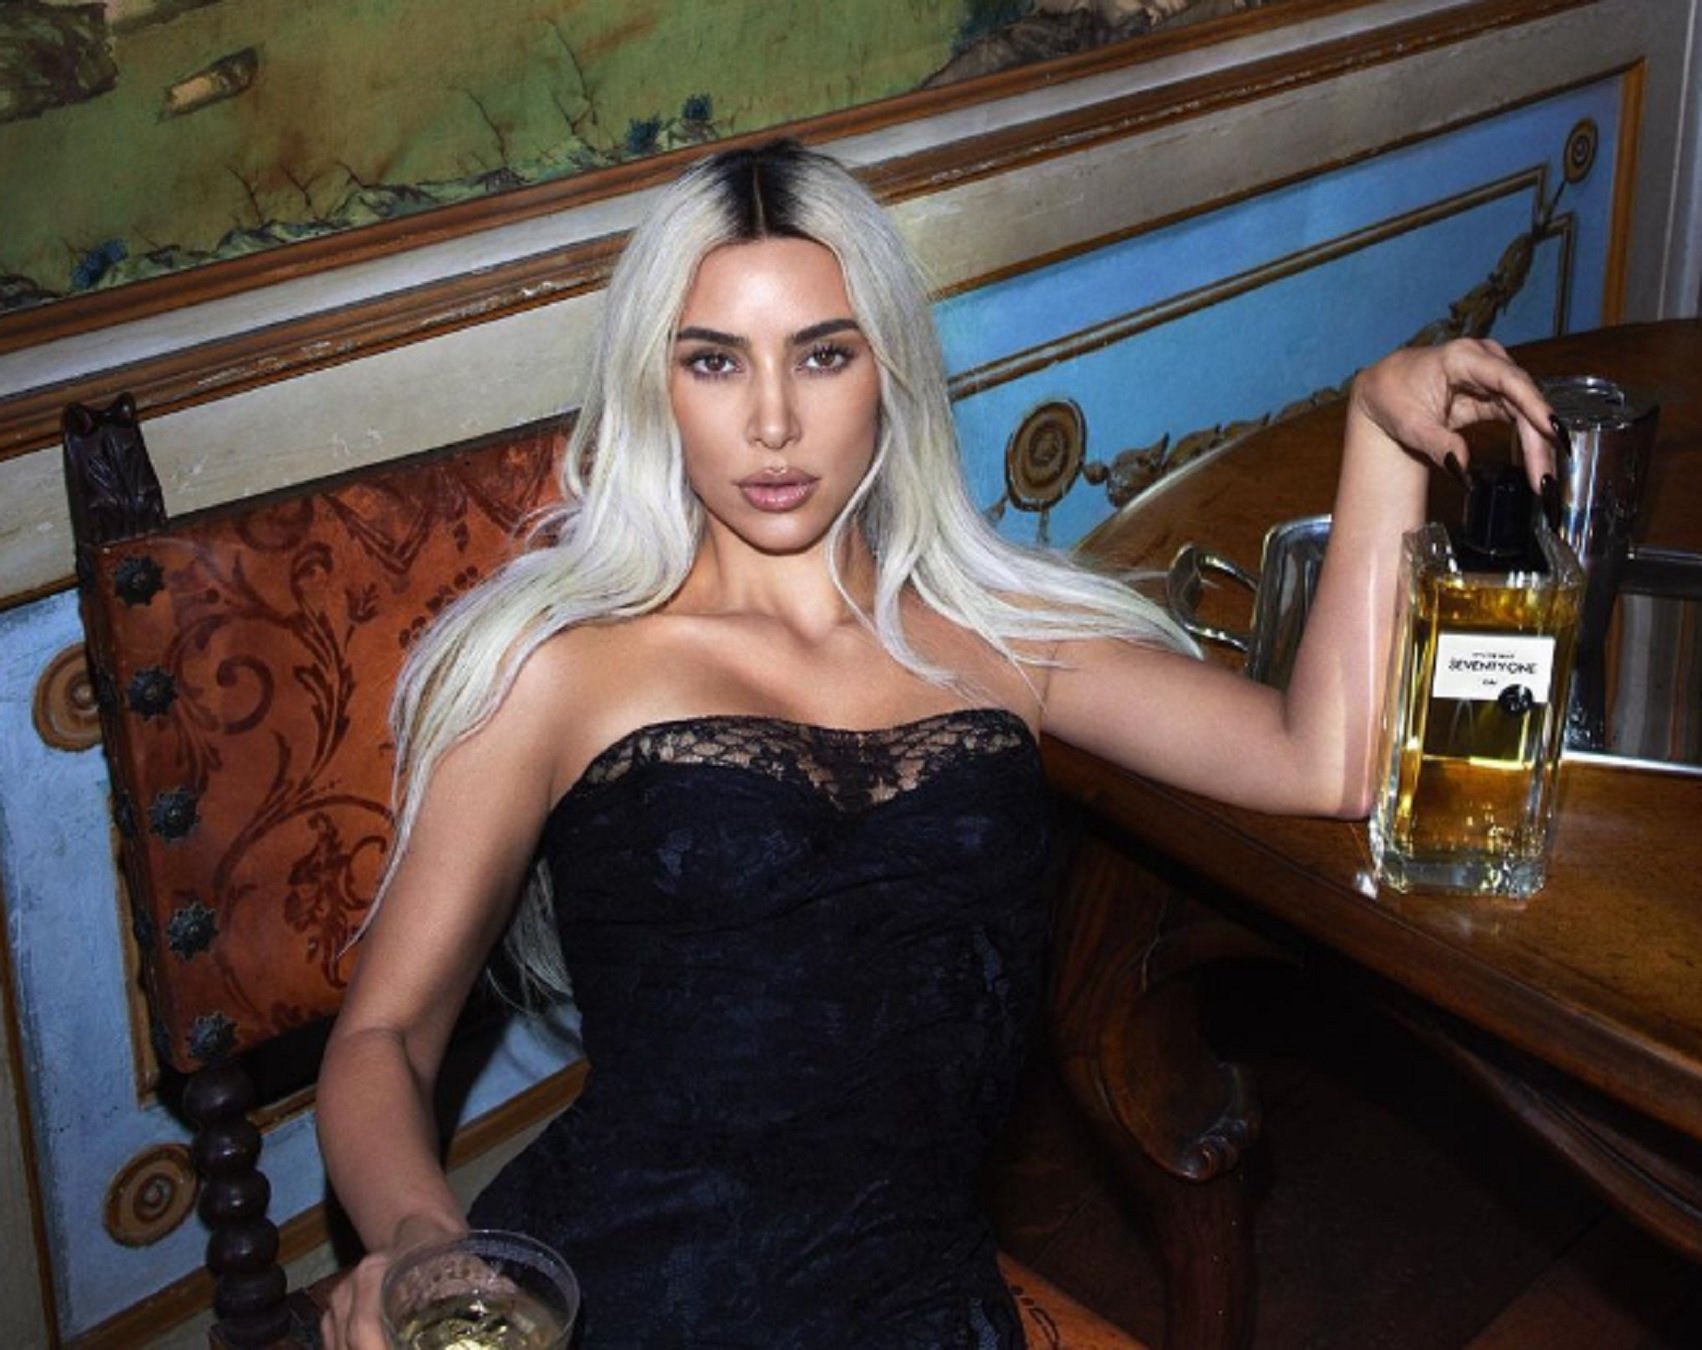 A Kim Kardashian li surt gratis la publicitat de les seves faixes gràcies a aquest incident